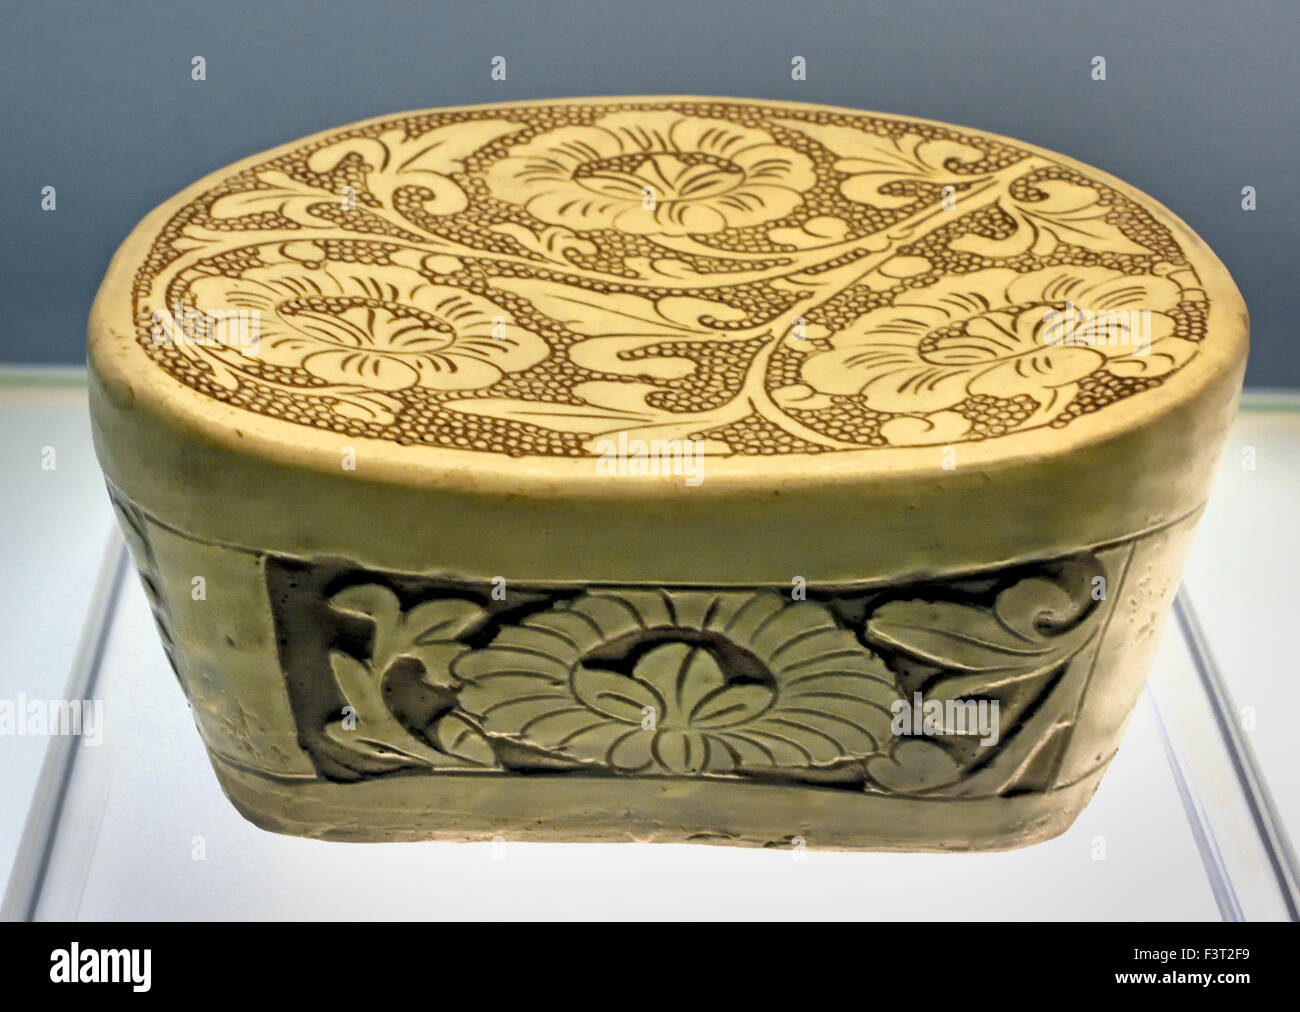 Oreiller avec pivoine incisées sur pearl design sol géométrique Denfeng Ware 960 - 1279 dynastie des Song du Nord ( Musée de Shanghai de l'art chinois ancien ) Chine Banque D'Images